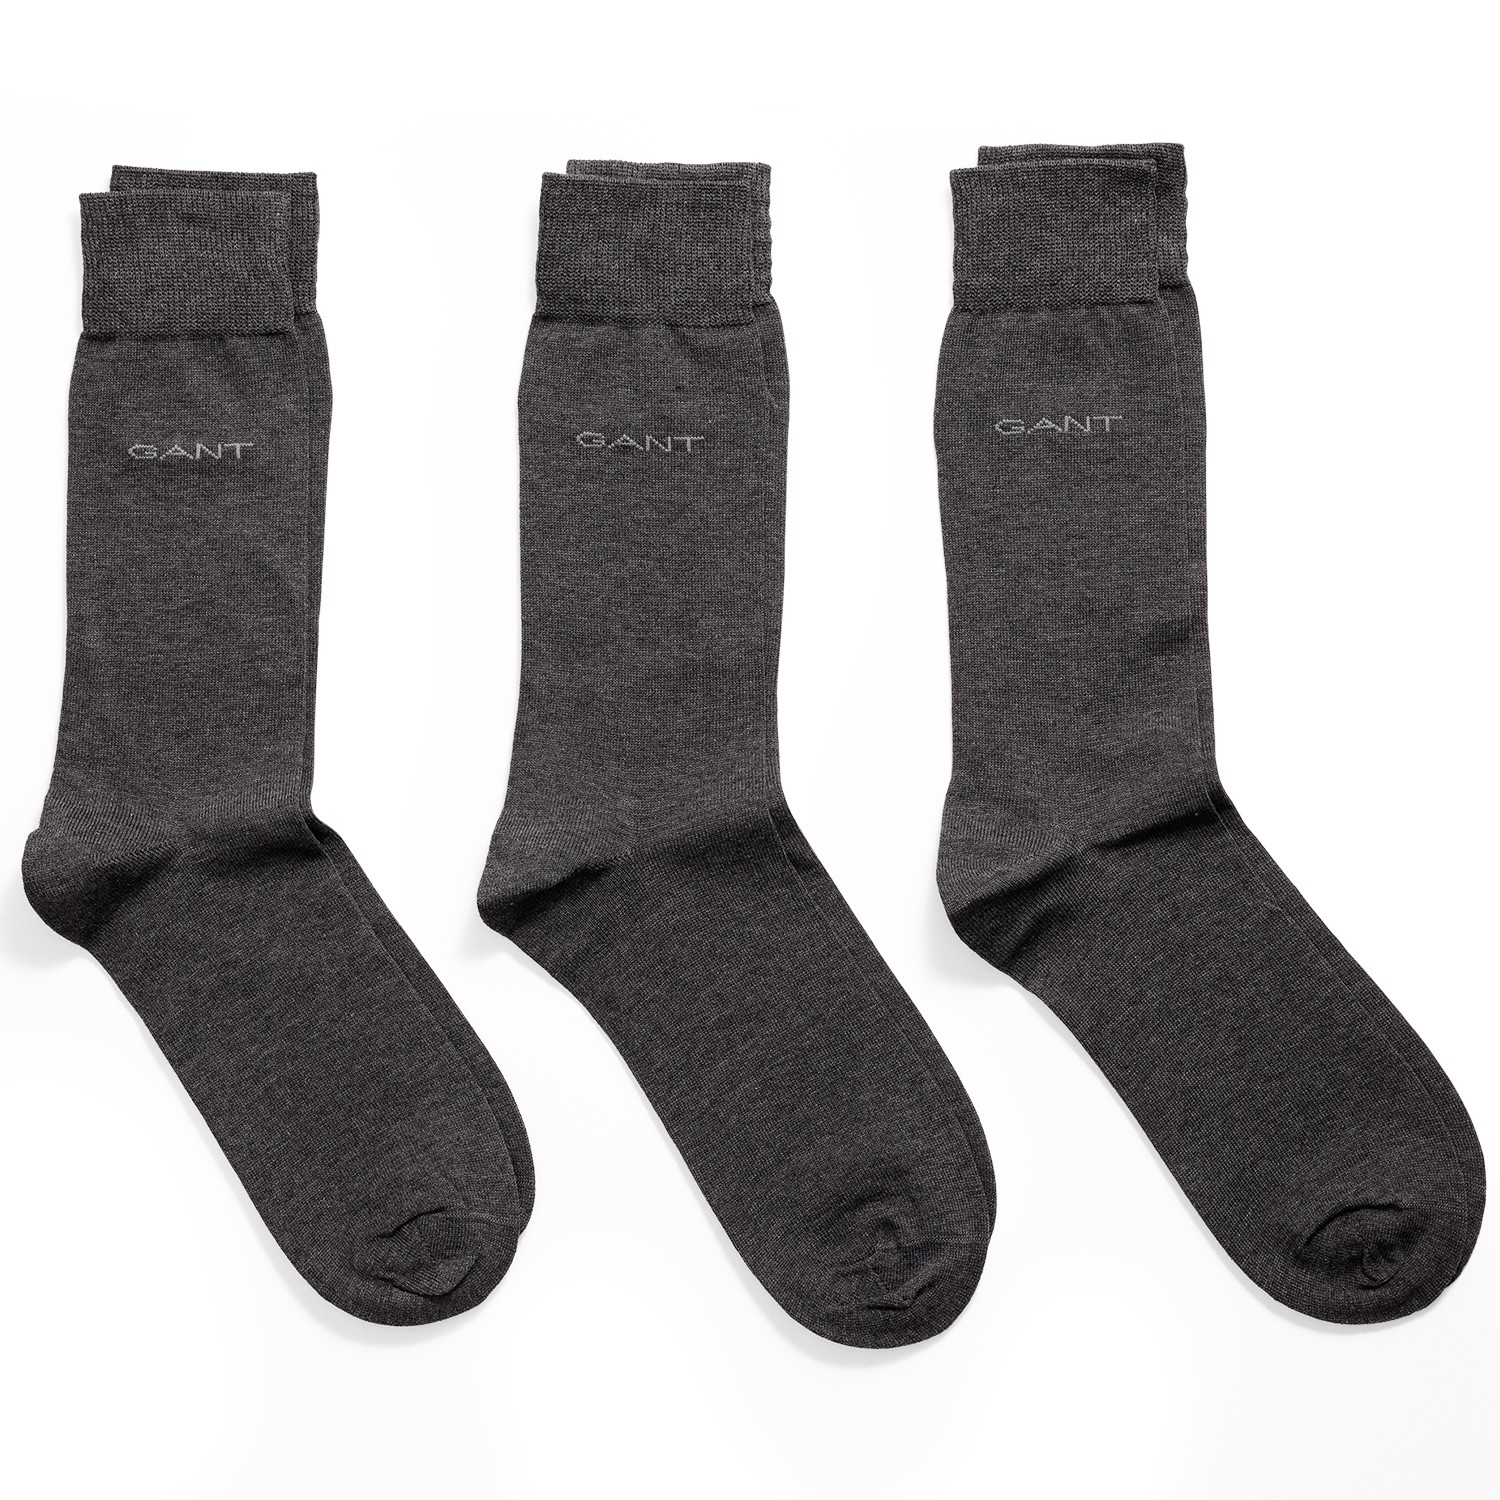 Gant Mercerized Cotton Socks